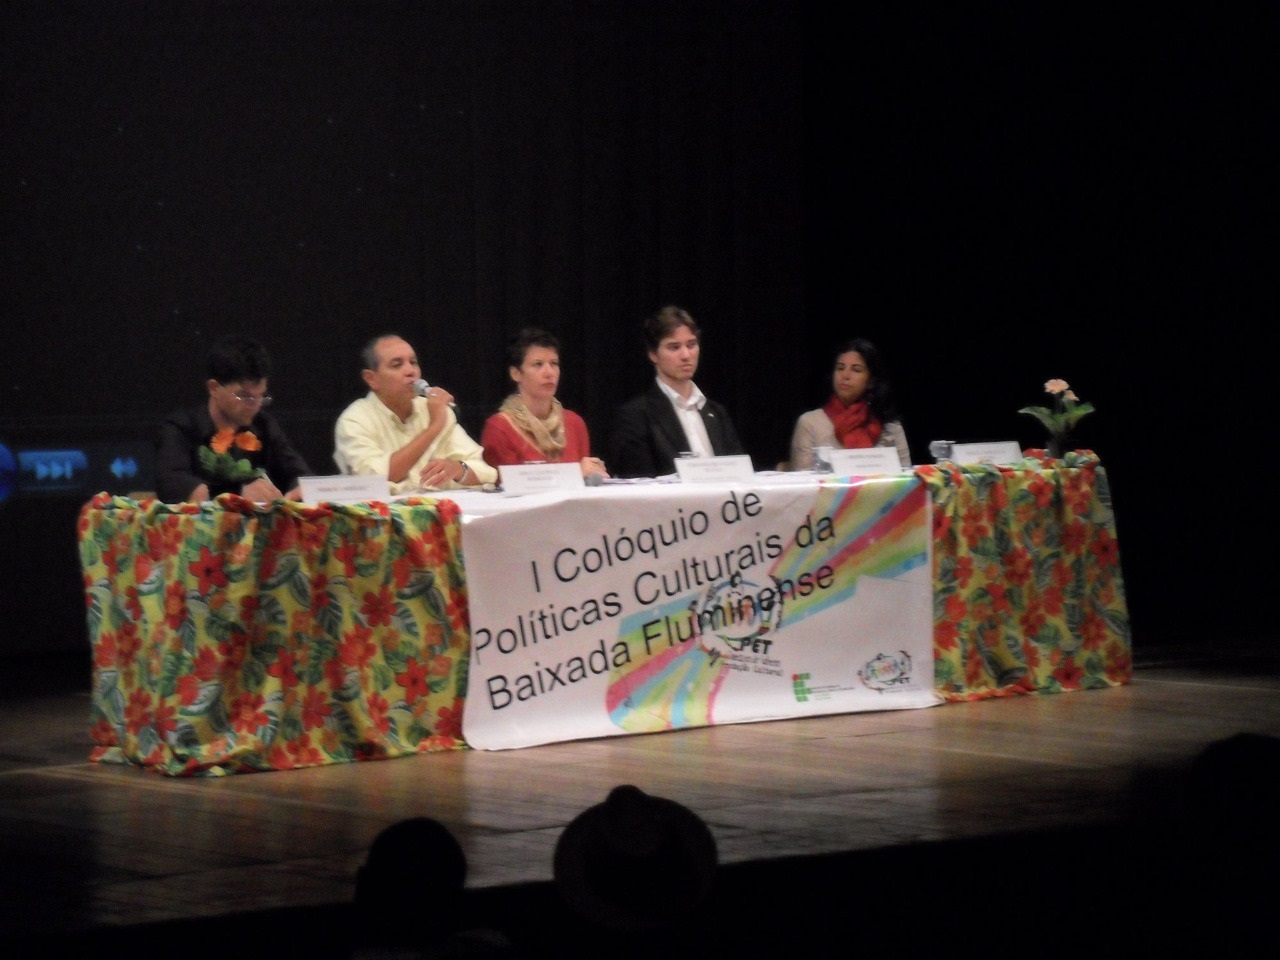 1° Colóquio de Políticas Culturais da Baixada Fluminense em 2011, no SESC São João de Meriti.